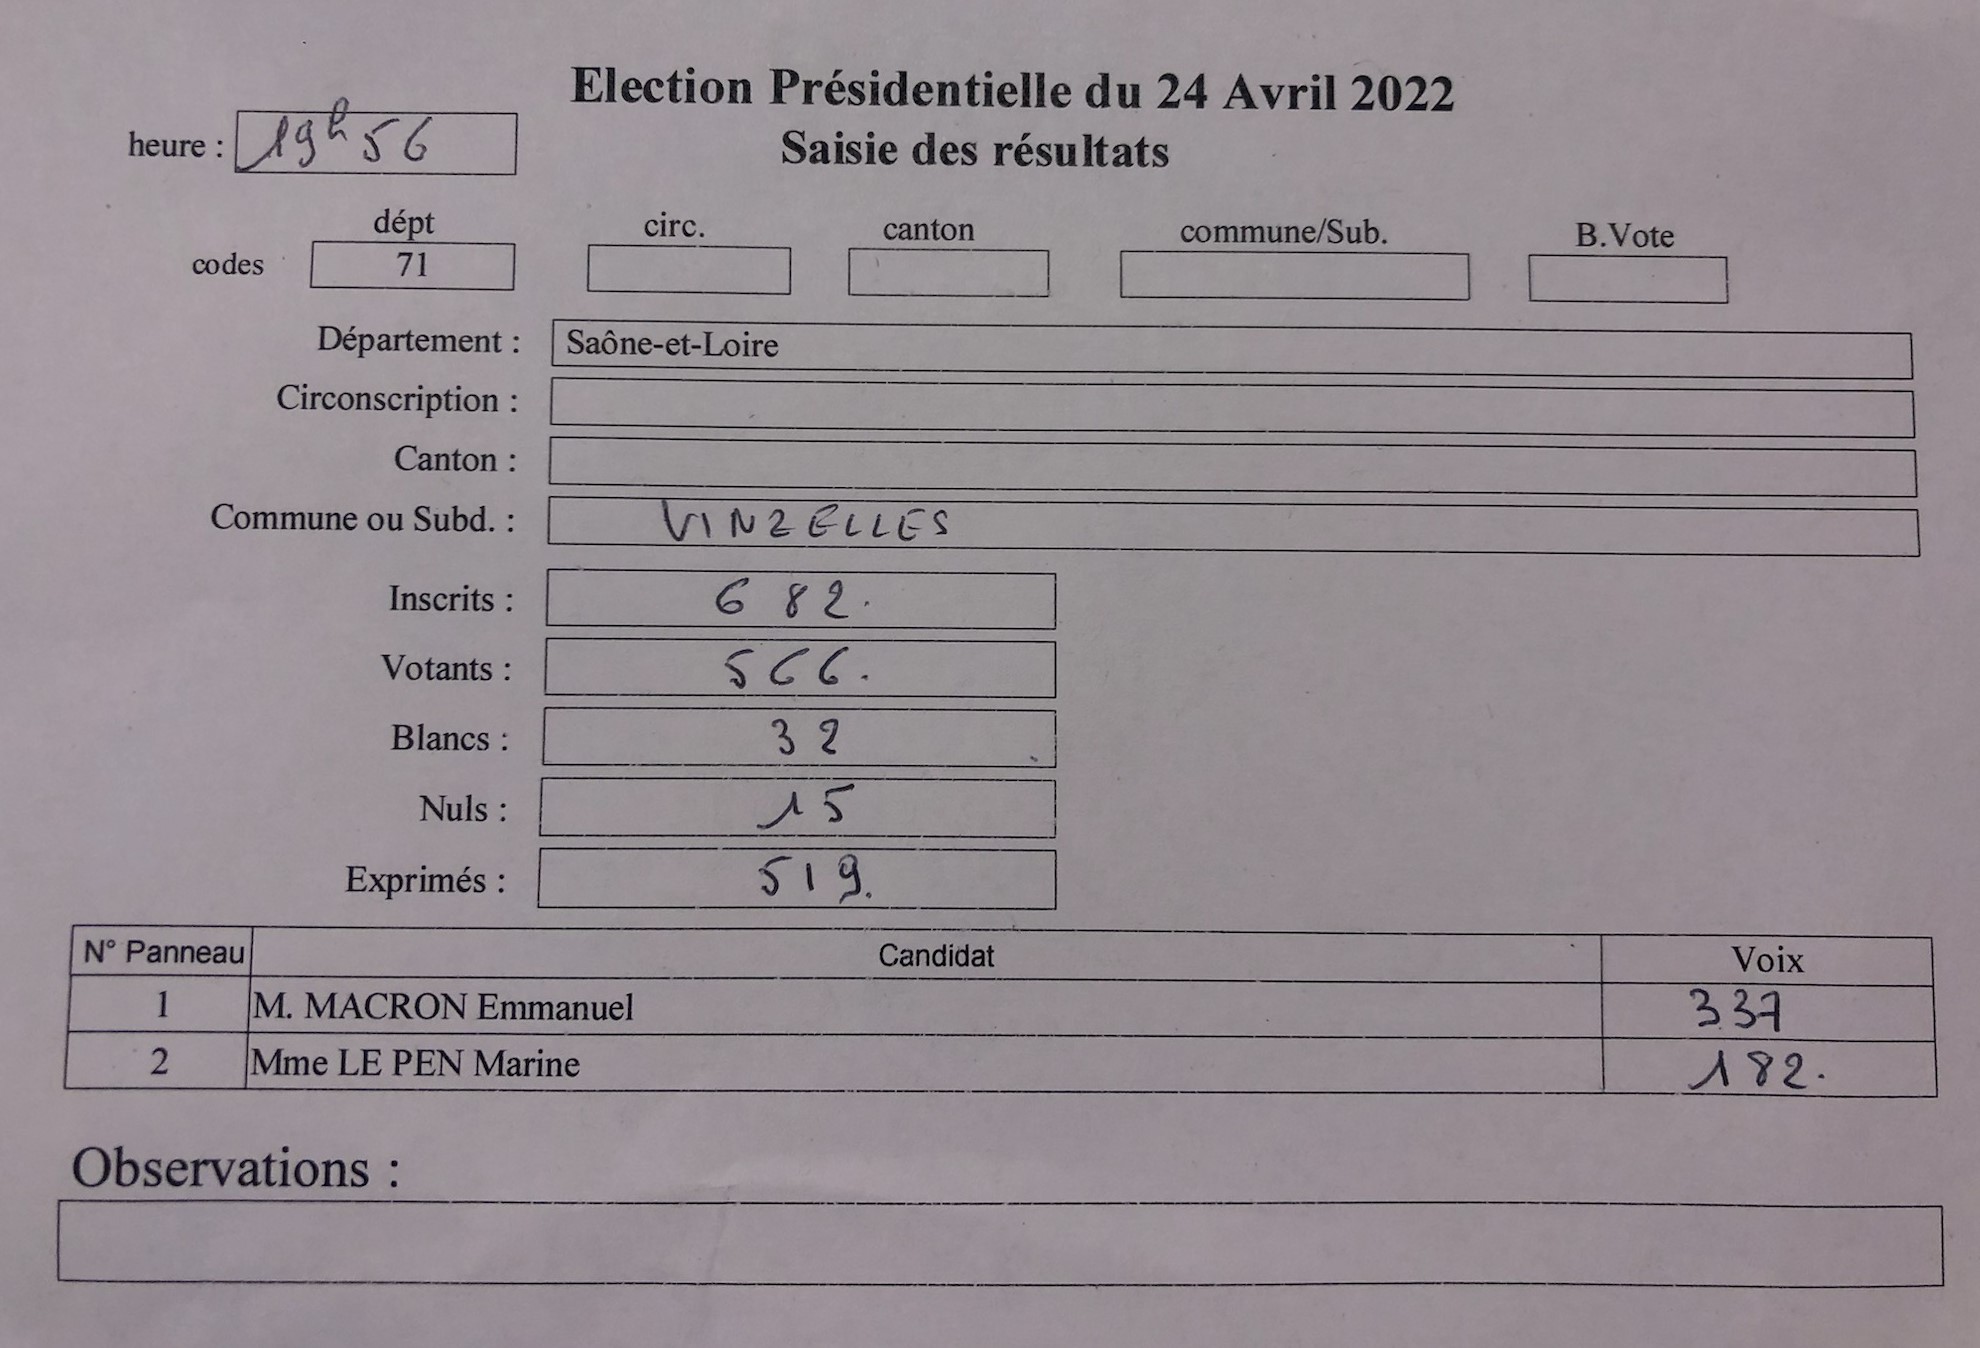 Résultats Election Présidentielle 24 Avril 2022 Vinzelles .jpg